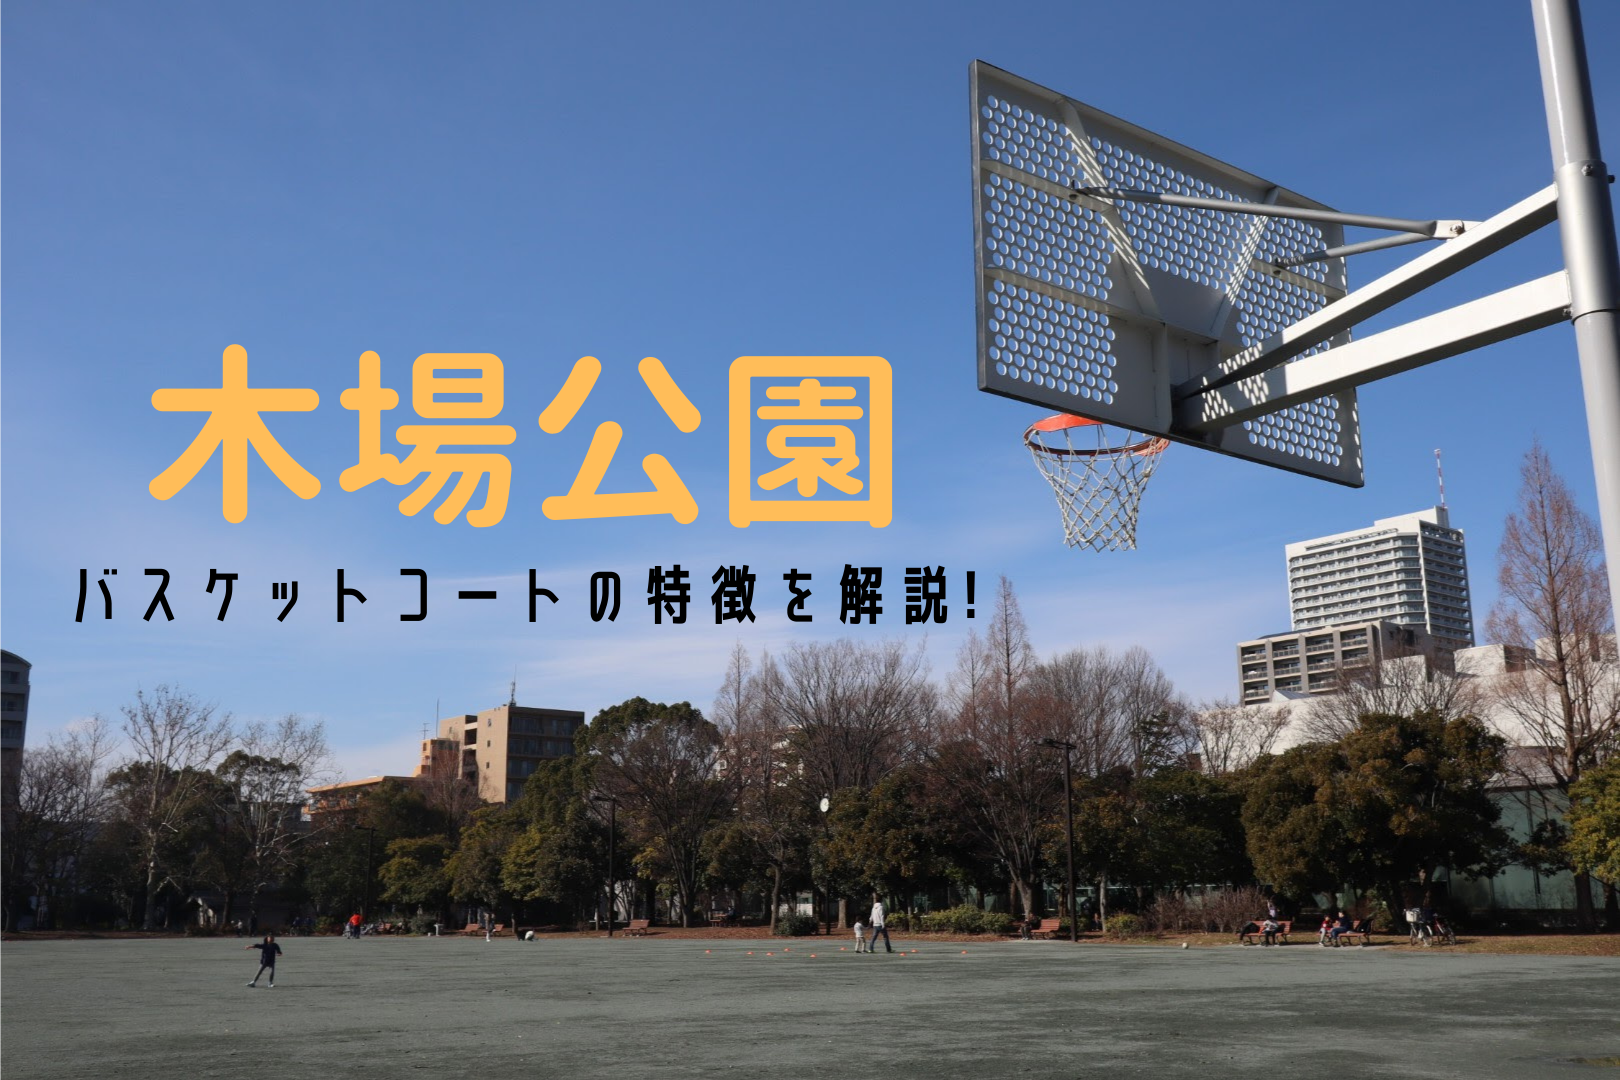 バスケットゴールがある公園を紹介 東京都立 木場公園 バケスト